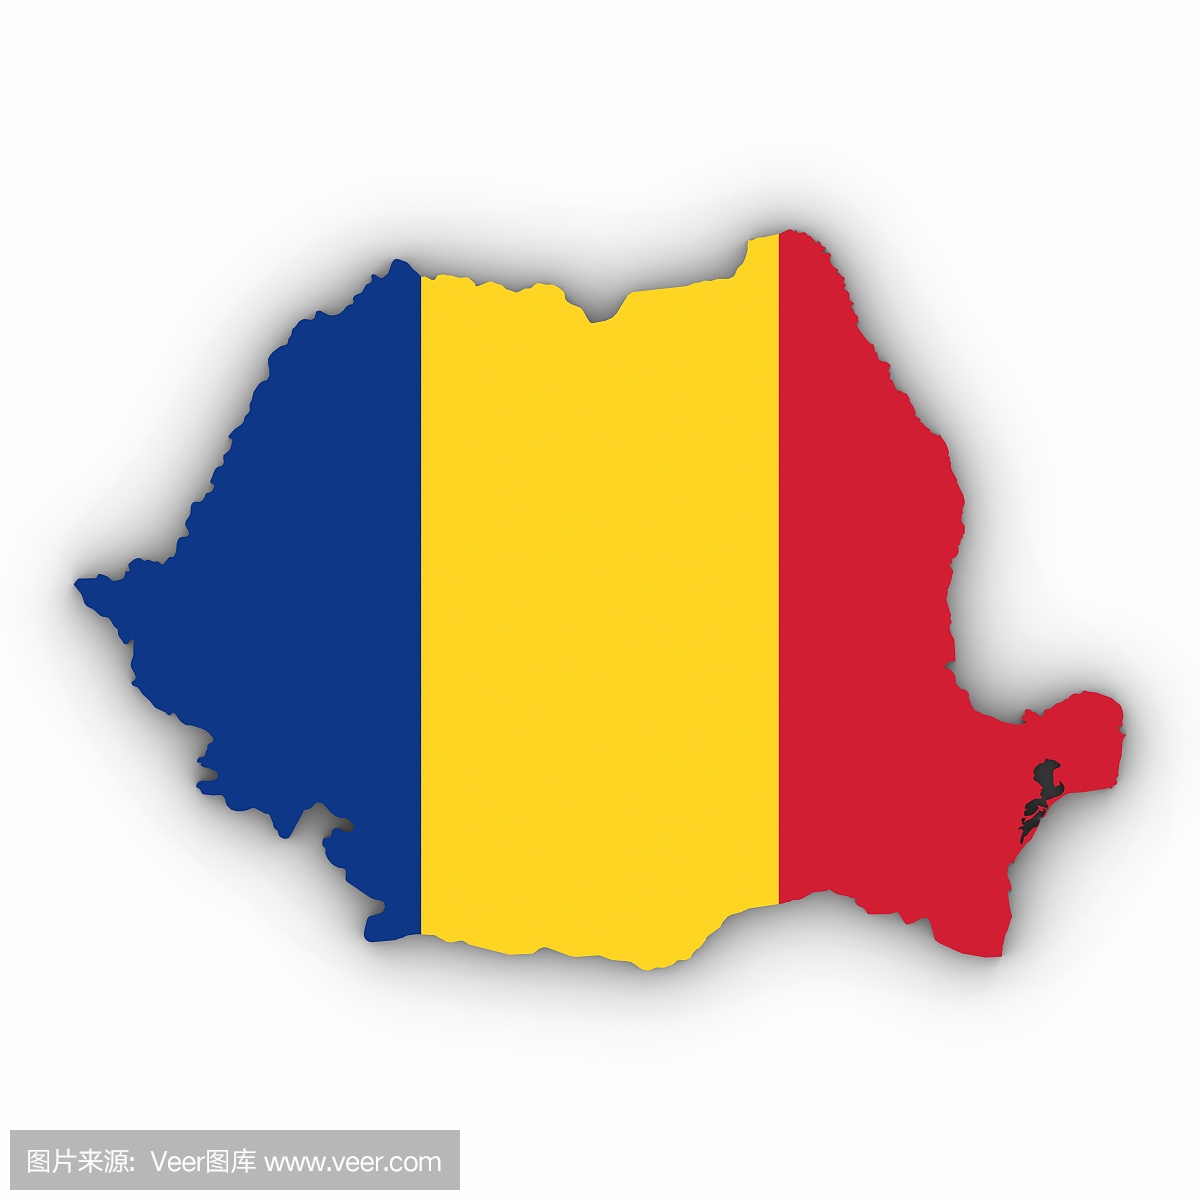 罗马尼亚地图大纲与罗马尼亚国旗在白色与阴影